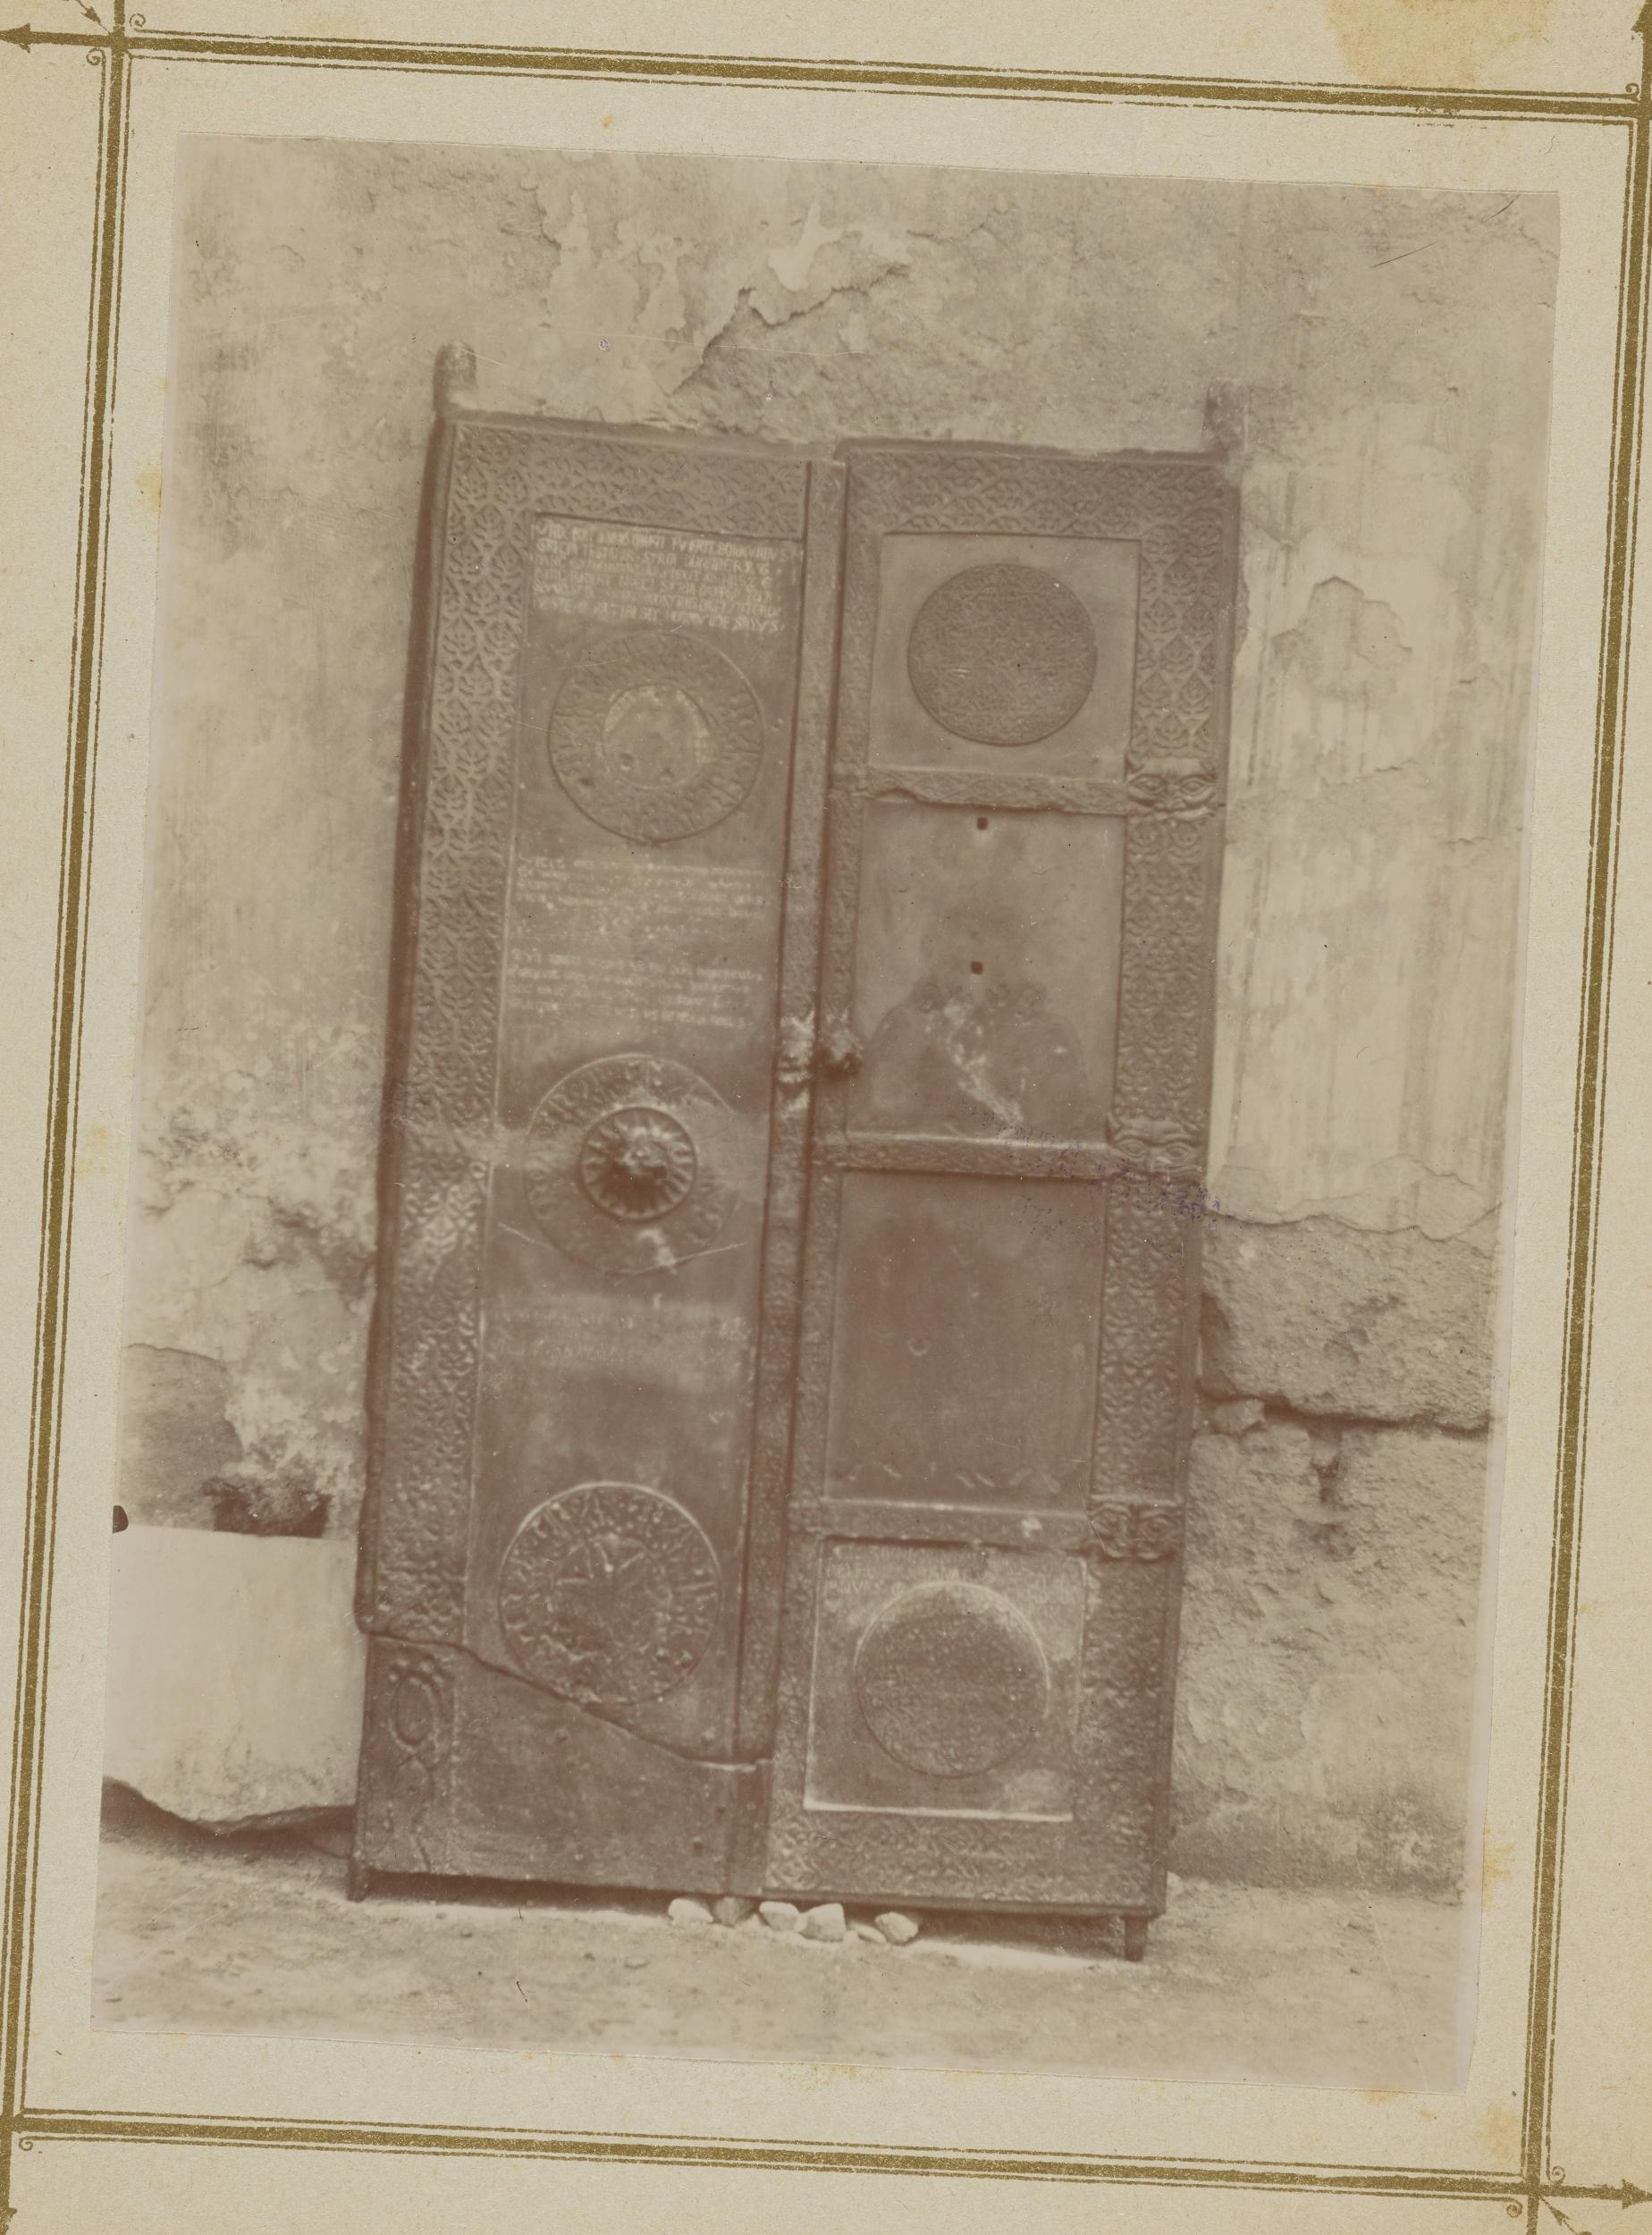 Fotografo non identificato, Canosa di Puglia - Cattedrale San Sabino, transetto, porta in bronzo, 1876-1900, albumina/carta, MPI309700